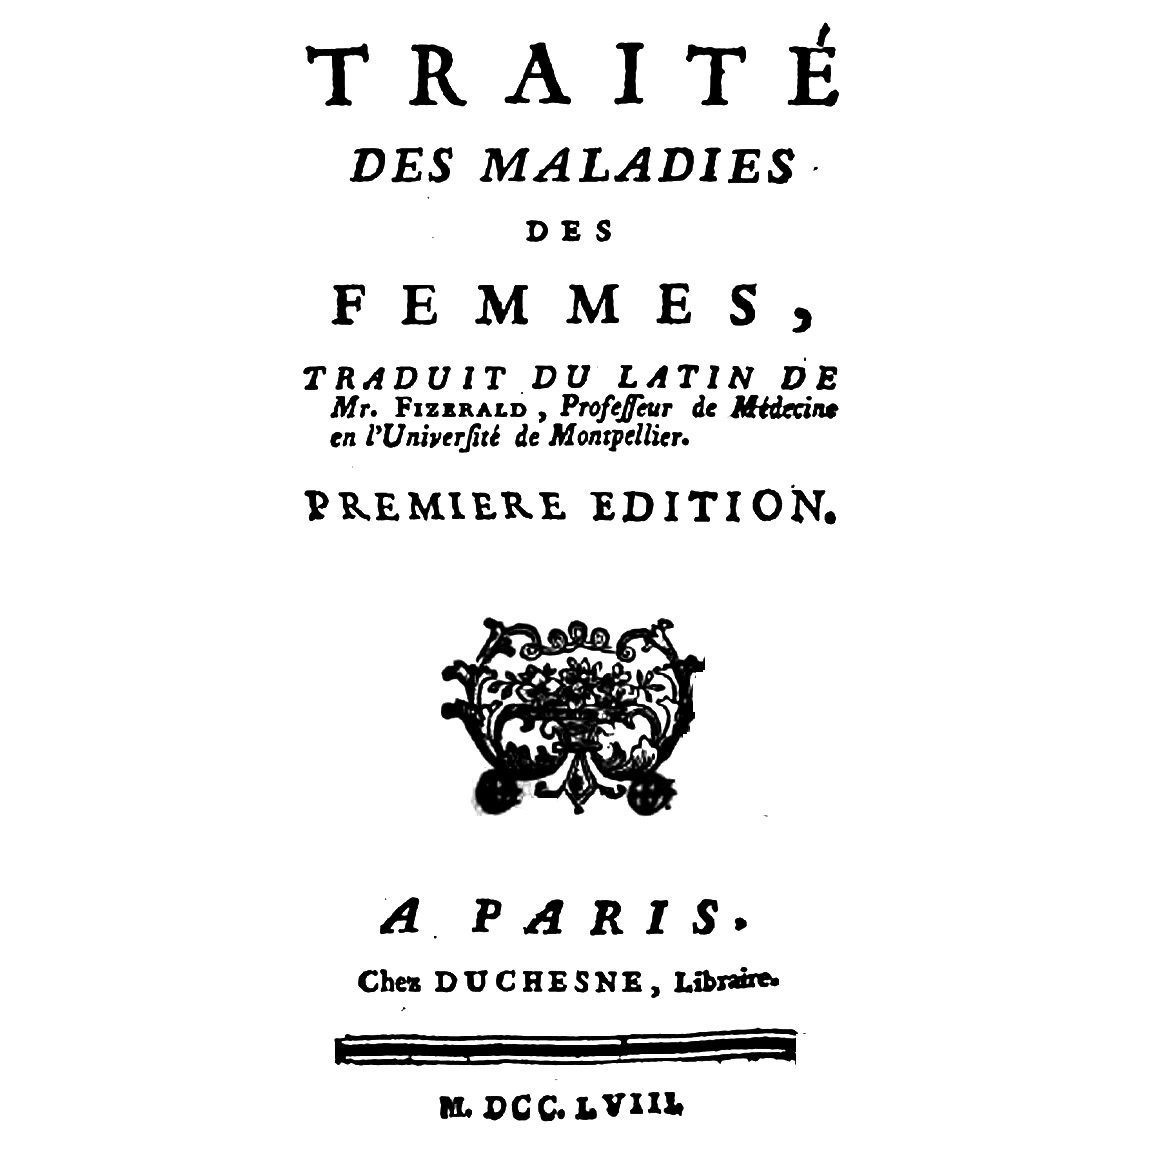 1758-FIZERALD-Traité-Maladies-Femmes-titre